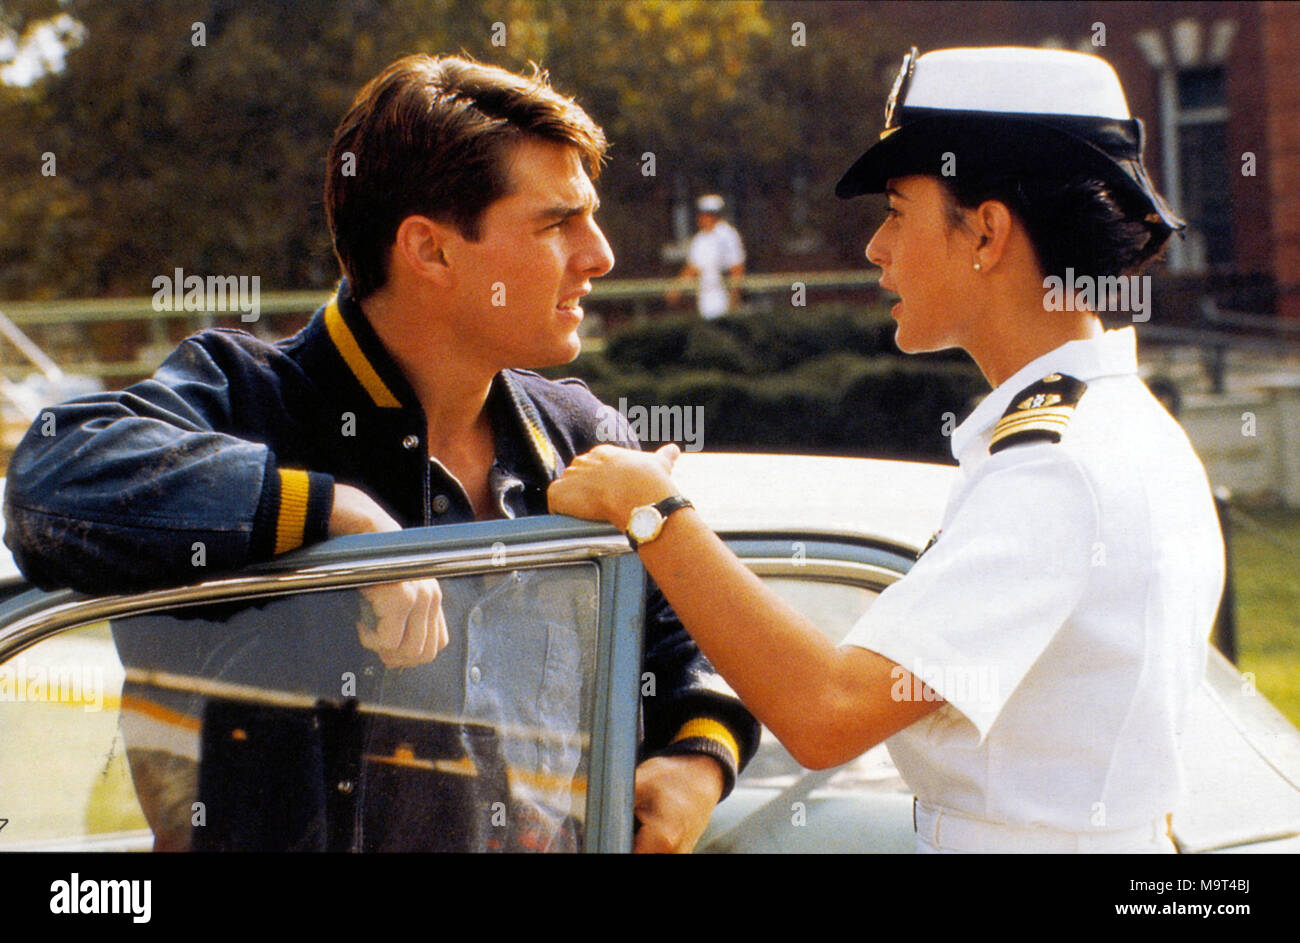 Ein paar gute Männer 1992 Castle Rock Entertainment Film mit Tom Cruise und Demi Moore Stockfoto